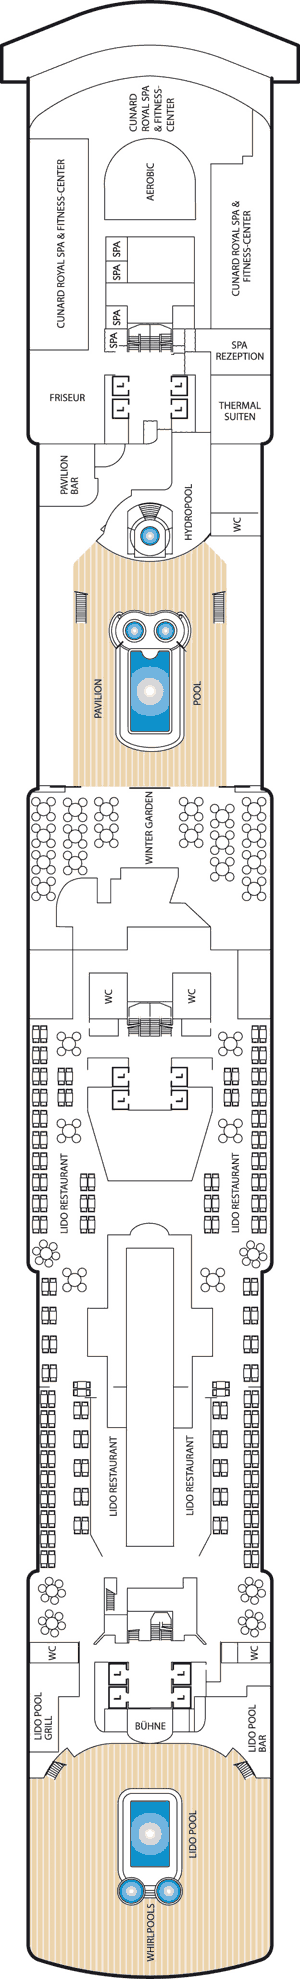 Queen Victoria - Decksplan Deck 9